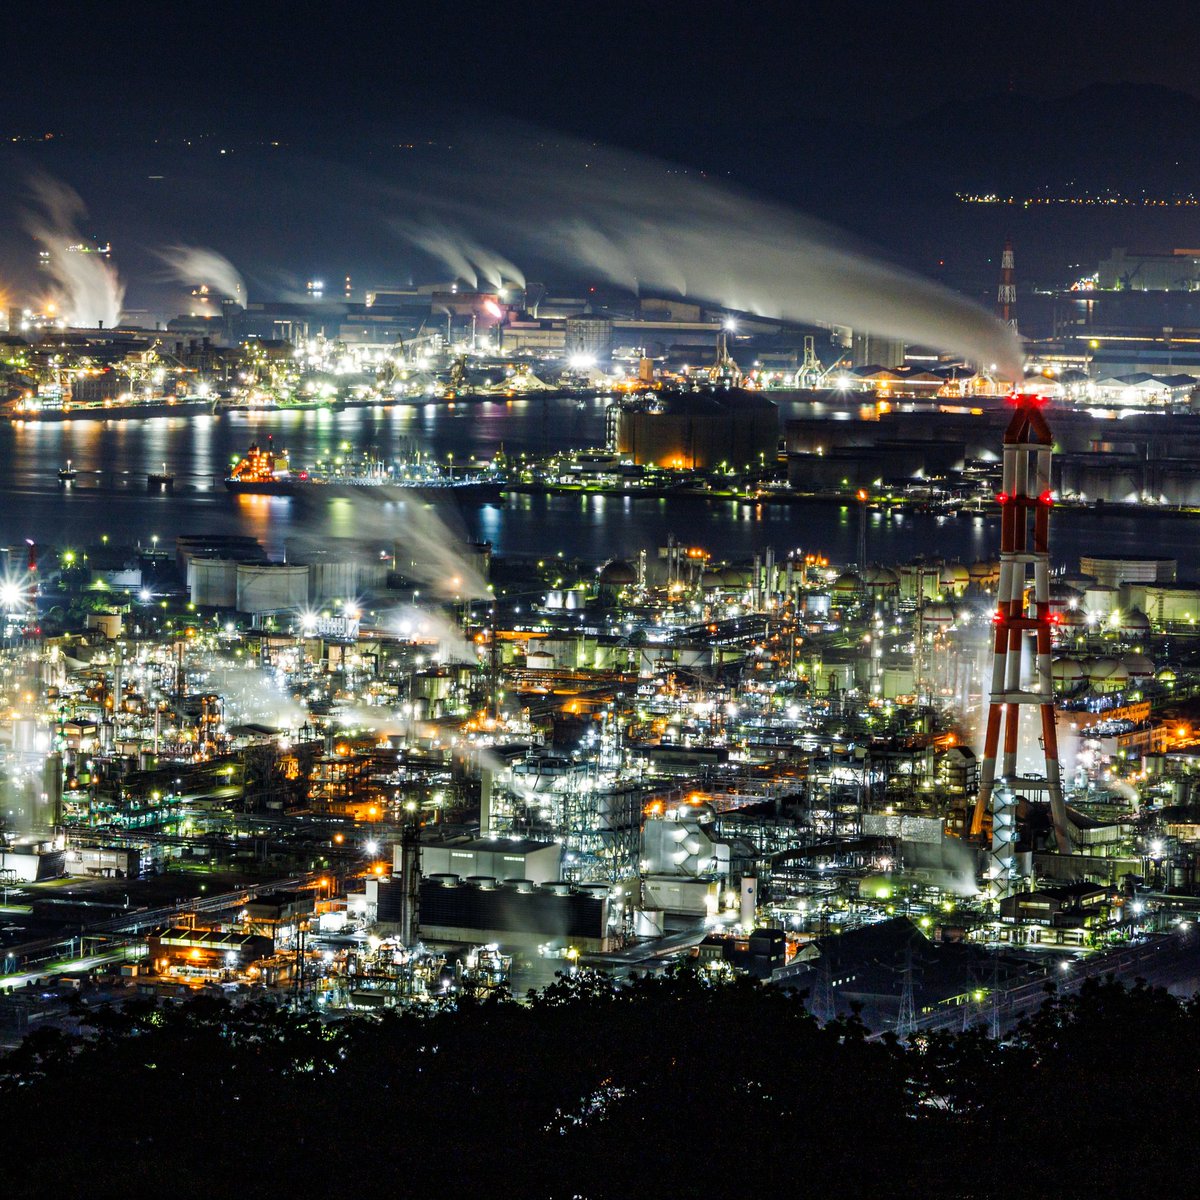 圧倒的工場夜景。
#水島コンビナート #夜景